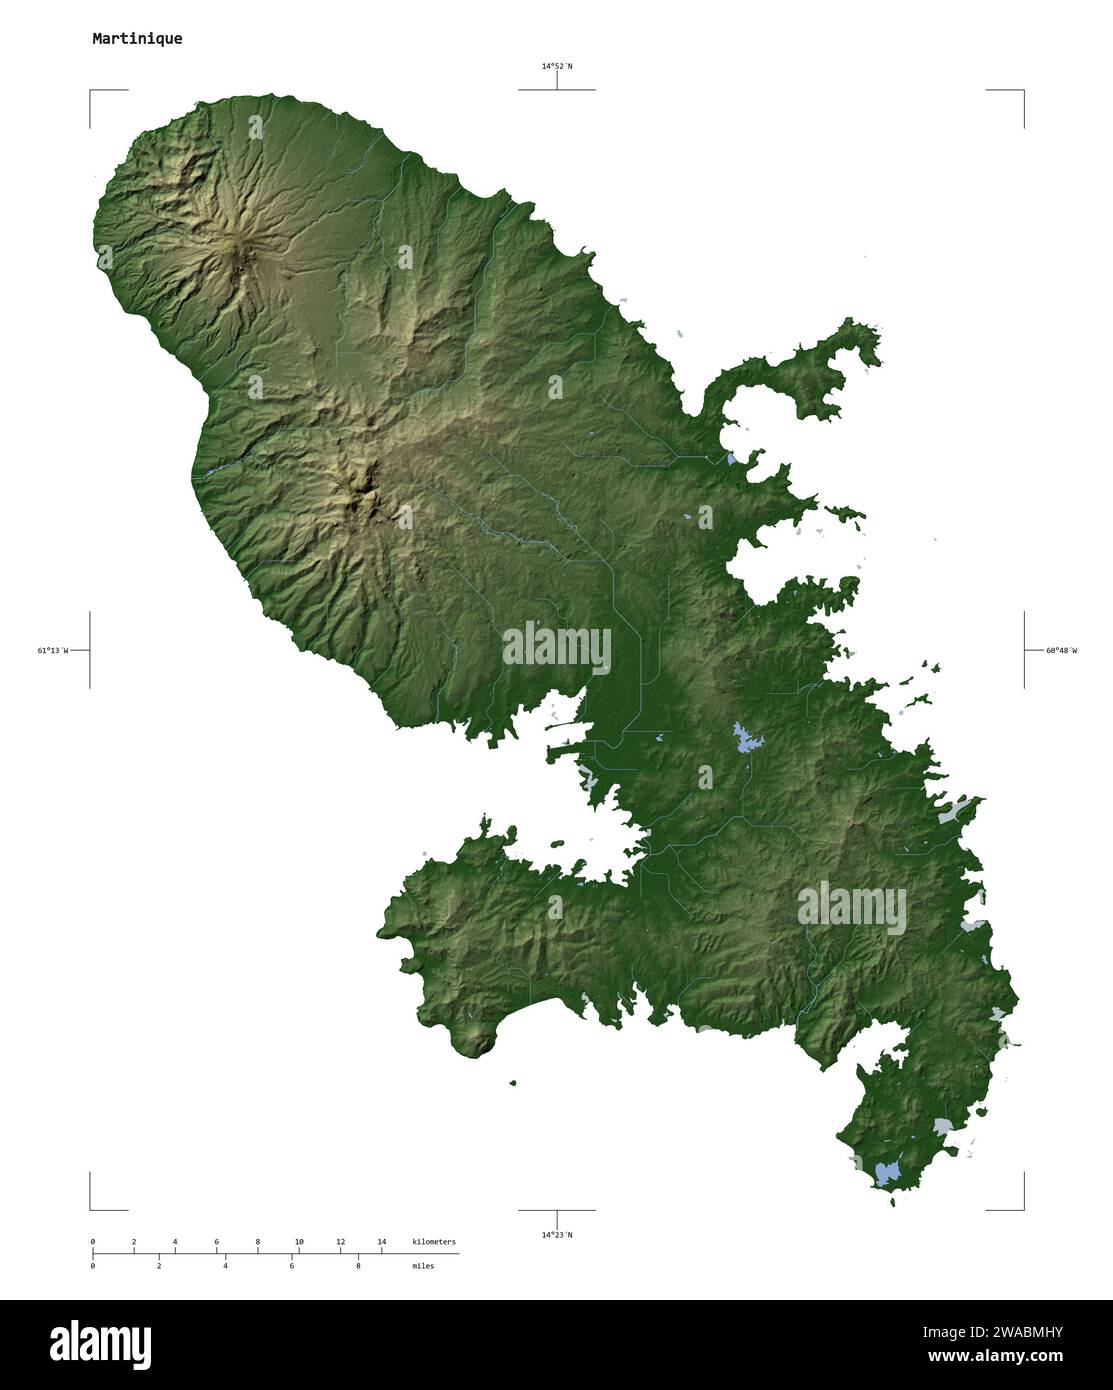 Forme d'une carte d'altitude en couleur pâle avec les lacs et les rivières de la Martinique, avec l'échelle de distance et les coordonnées de la frontière de la carte, isolé sur blanc Banque D'Images